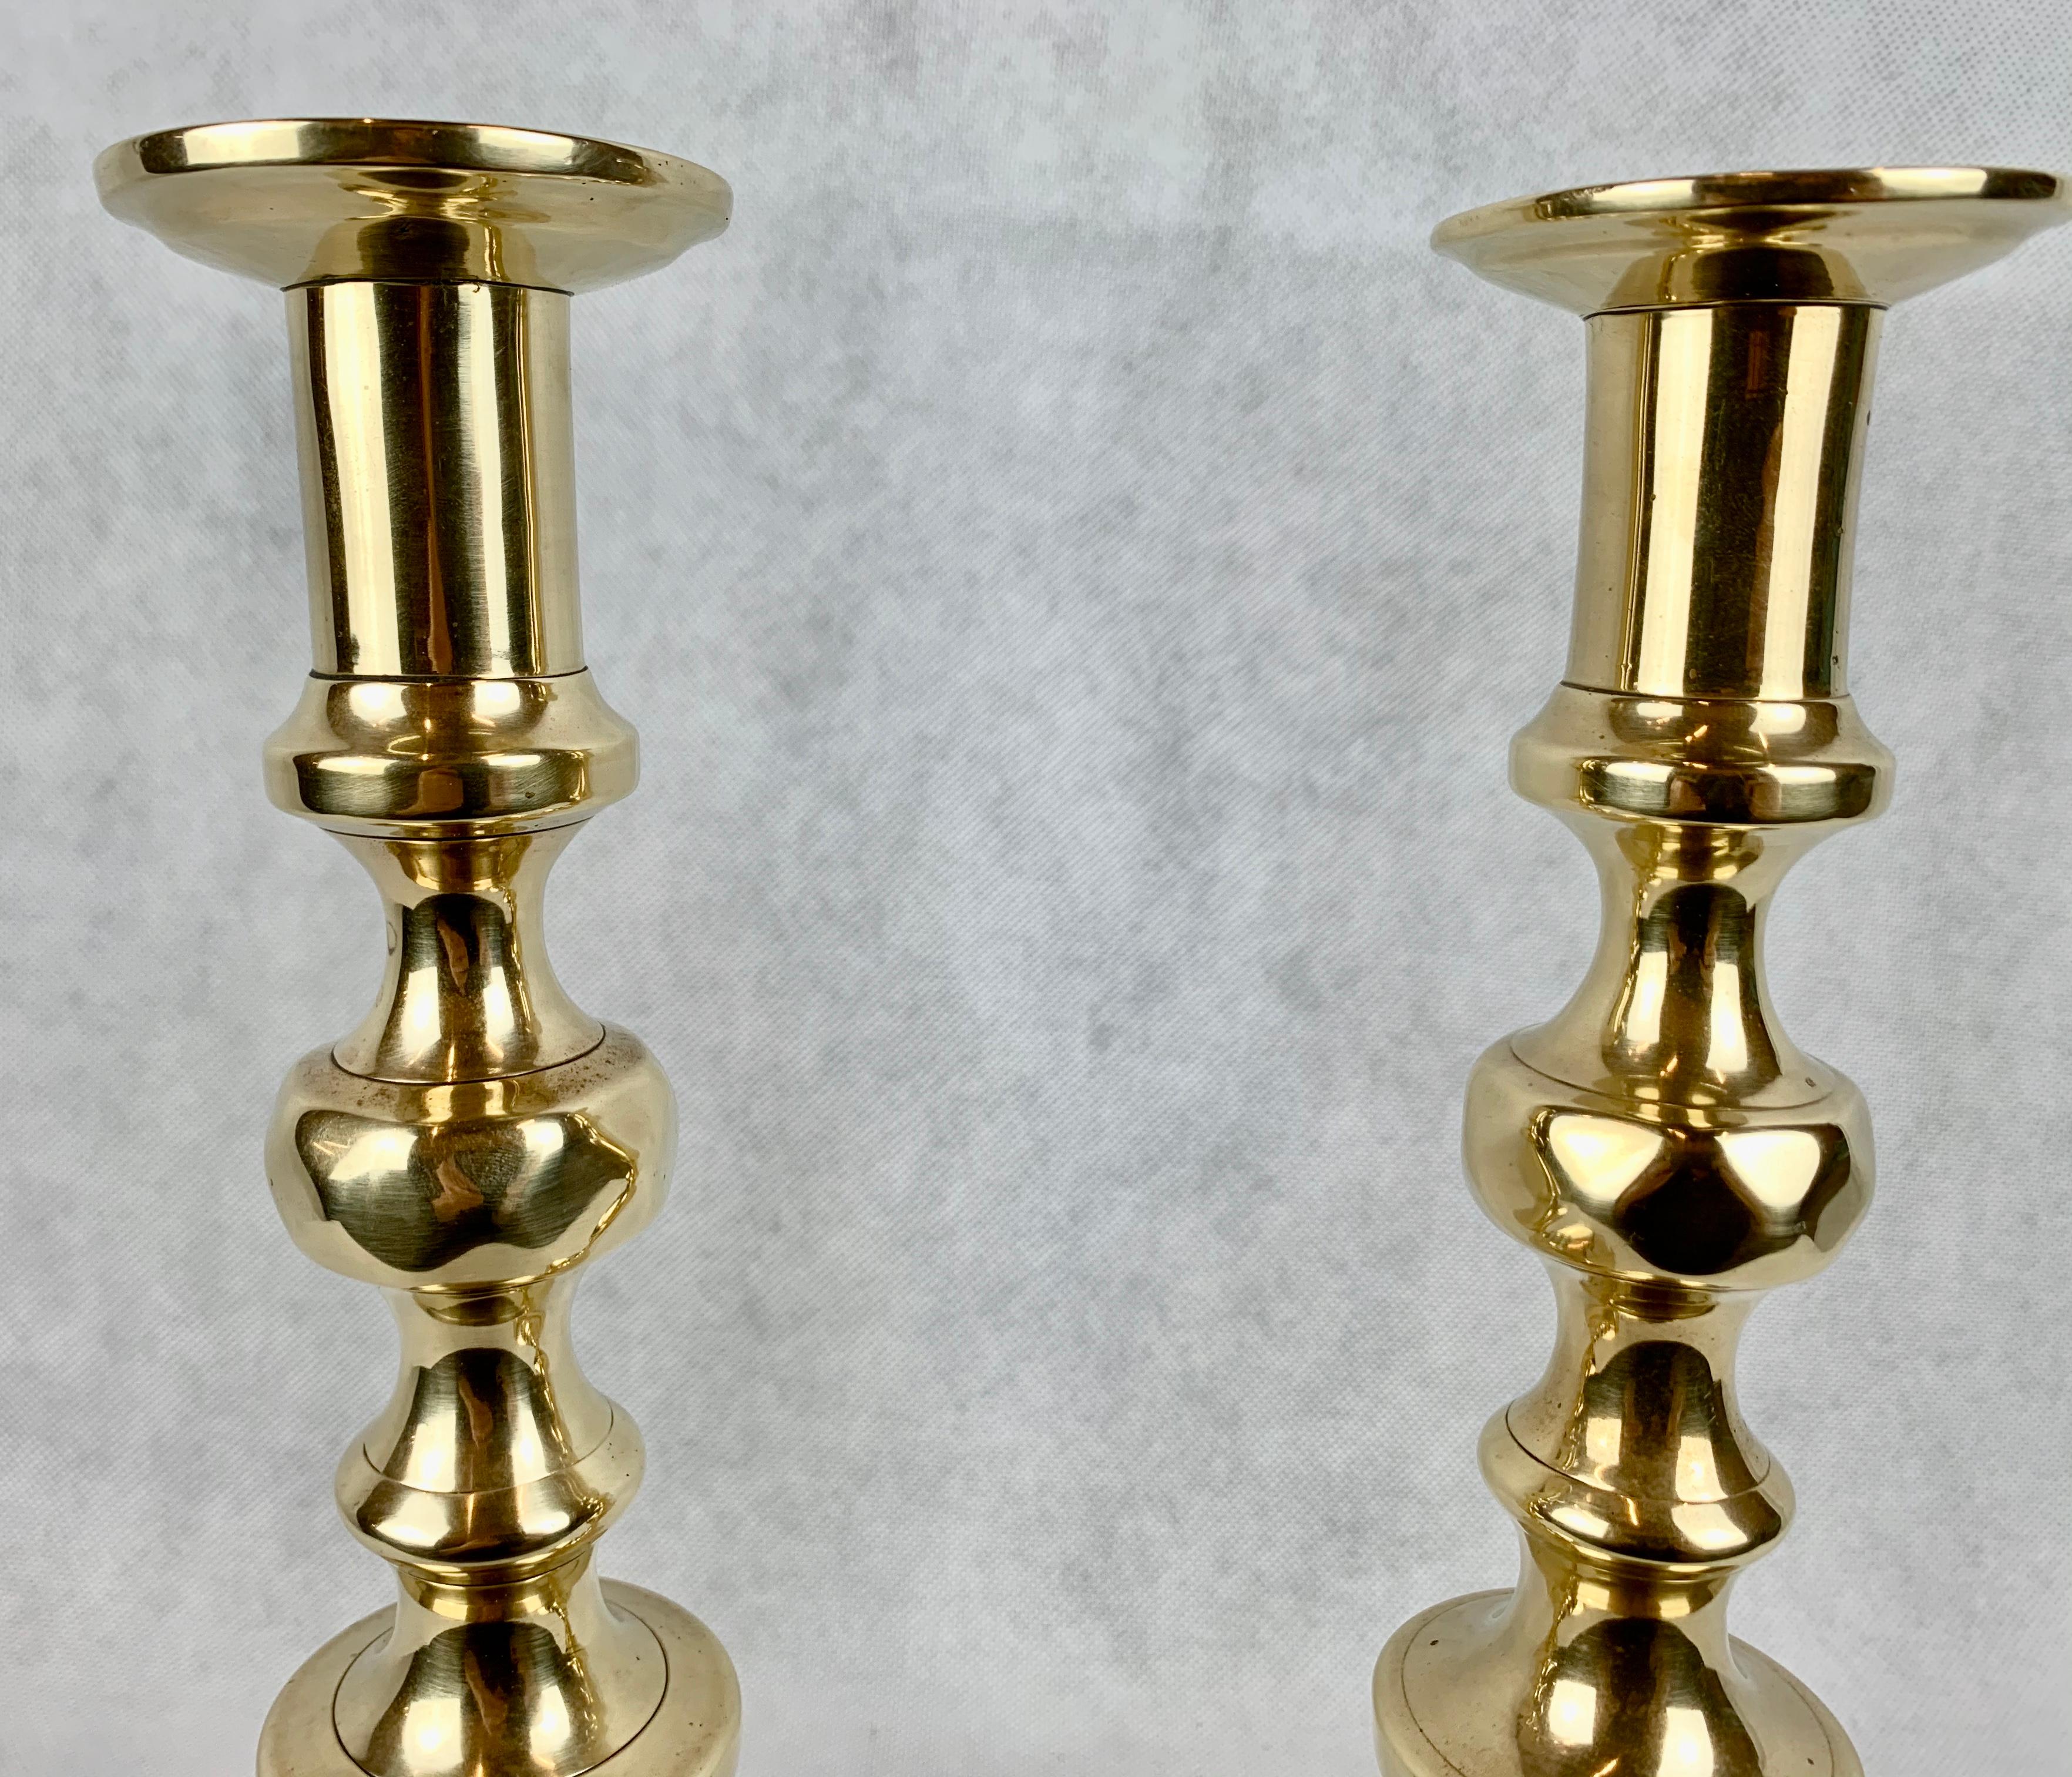 Paire de chandeliers anglais en laiton de l'époque géorgienne, en forme de ruche et de diamant, avec leur mécanisme de poussée intact. Le mécanisme de poussée était un moyen de faire sortir la vieille cire par le haut du chandelier.
Polis à la main